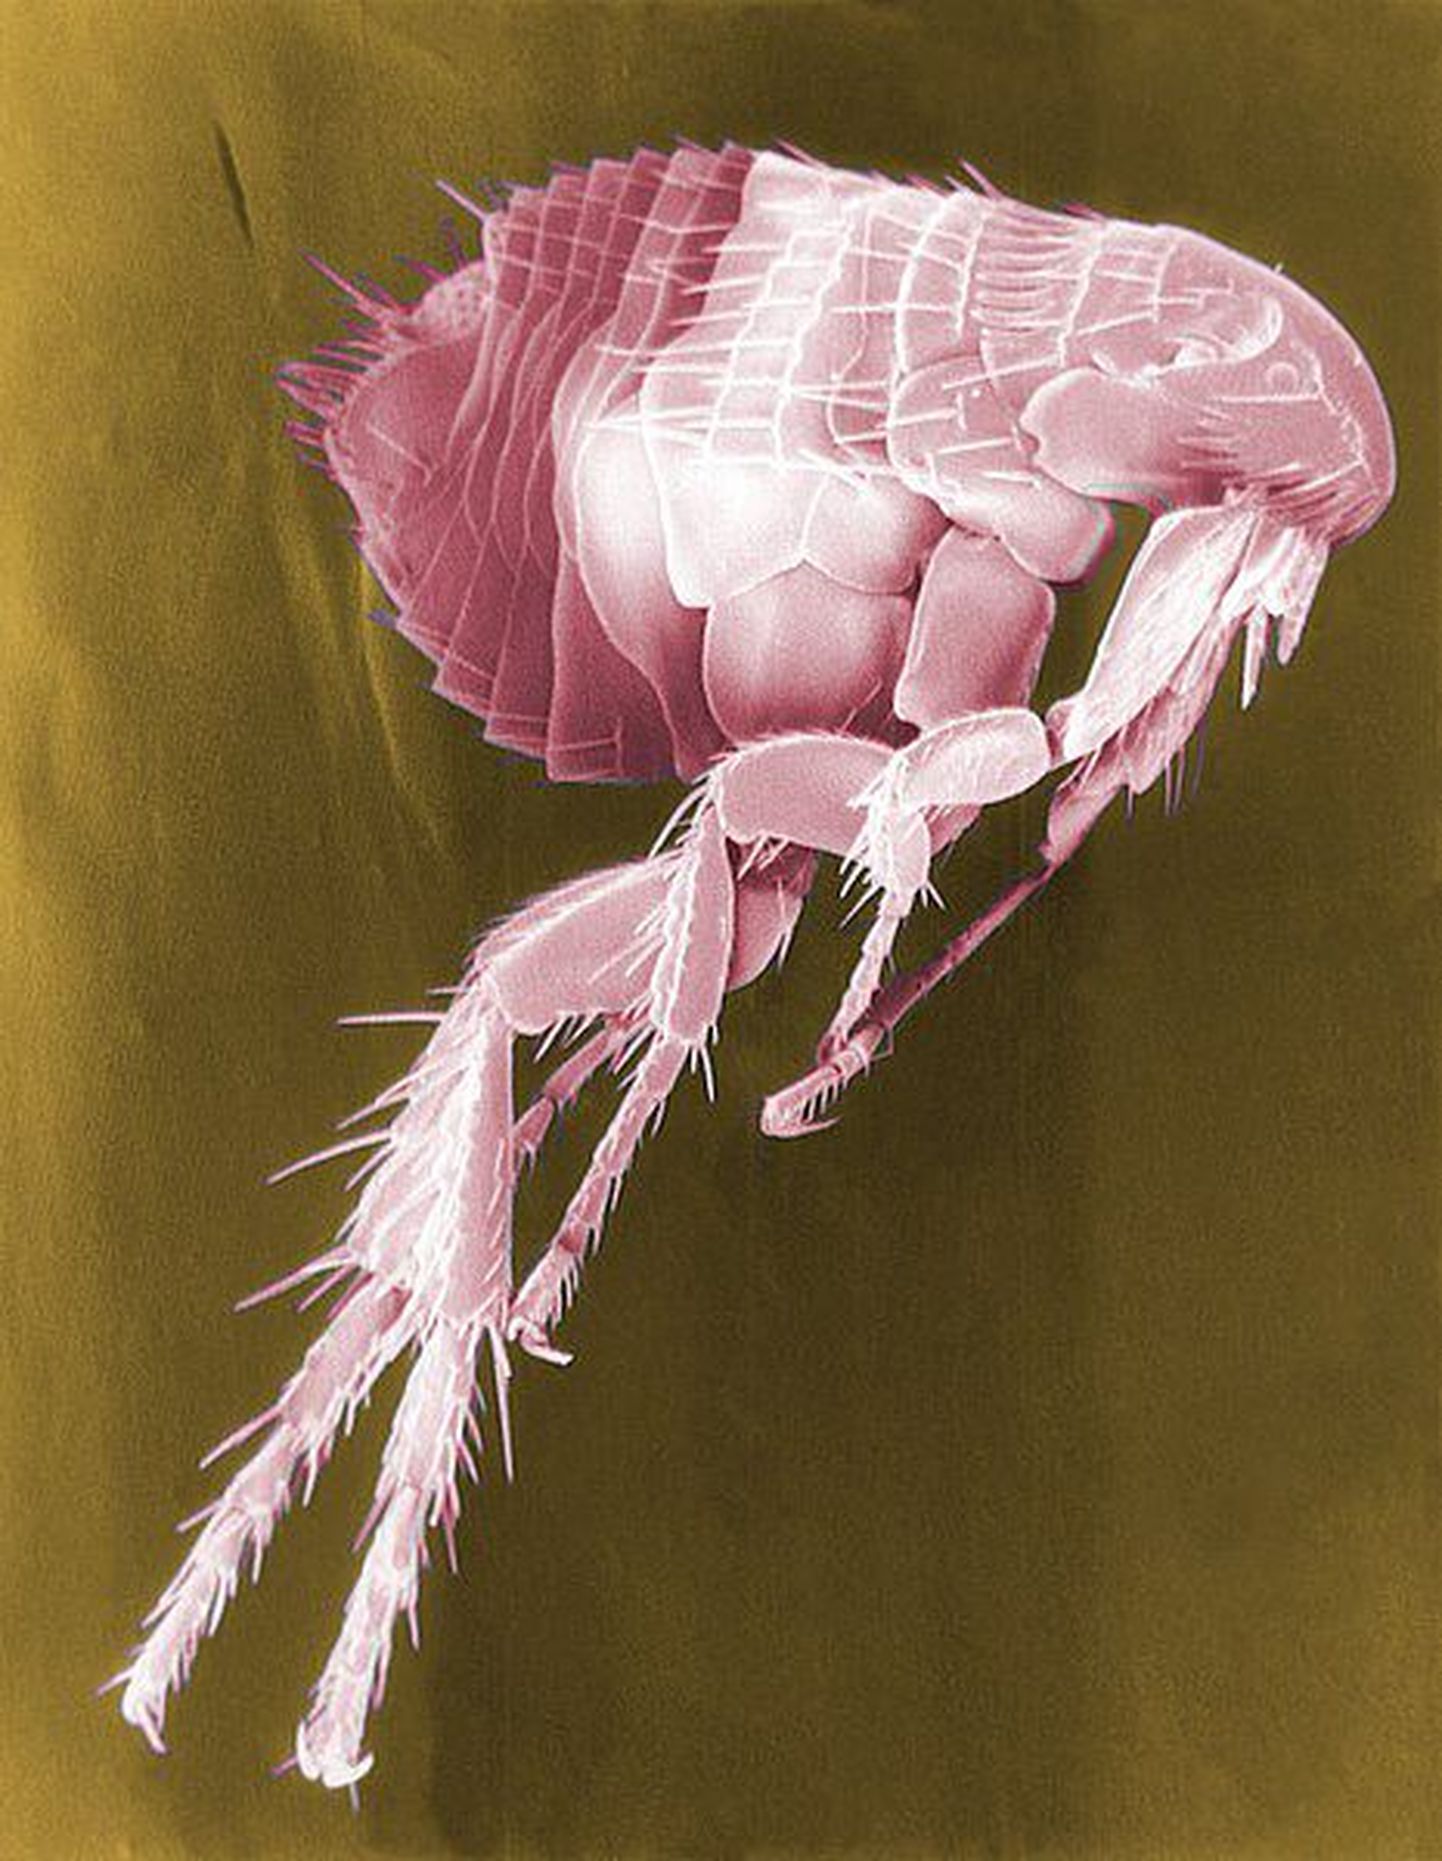 Kirbud on parasiidid, kes elatuvad teiste loomade ja inimeste verest ning võivad kanda edasi katkubakterit.